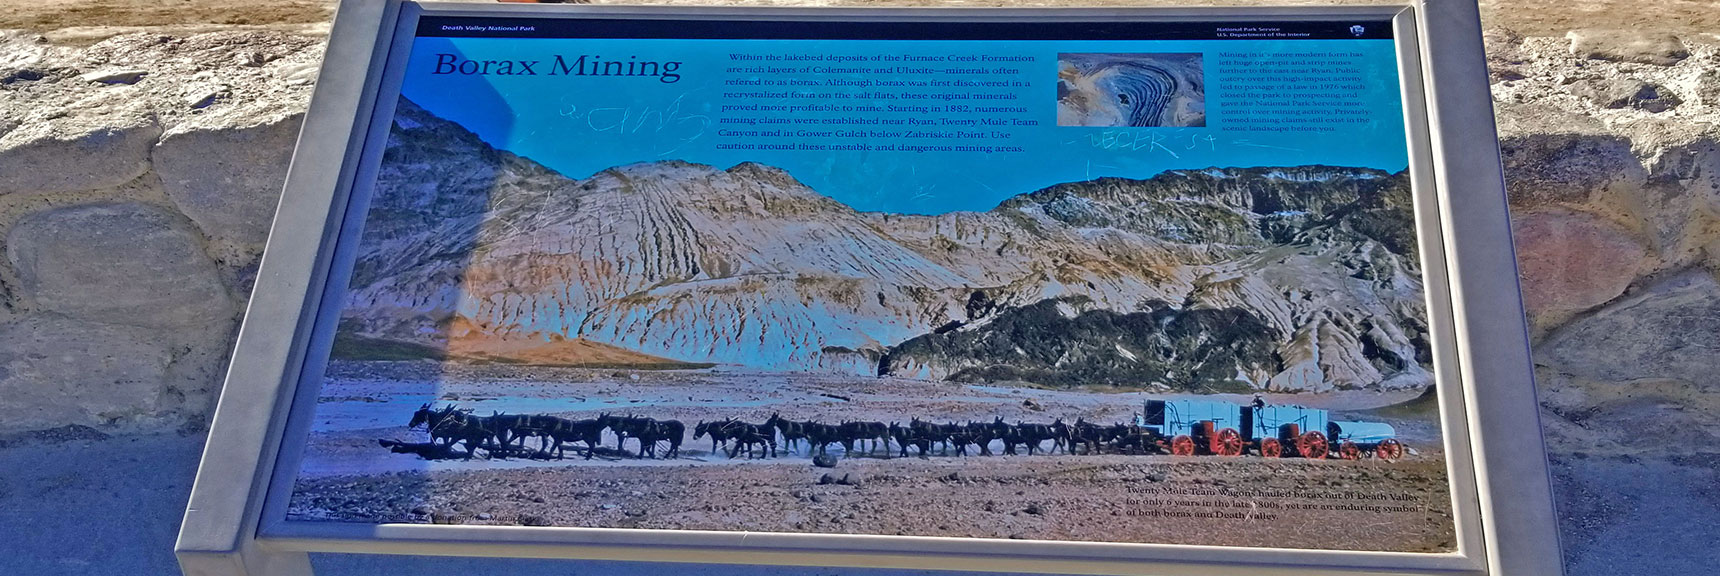 20-Mule Team Interpretive Sign at Zabriskie Point. | Golden Canyon to Zabriskie Point | Death Valley National Park, California